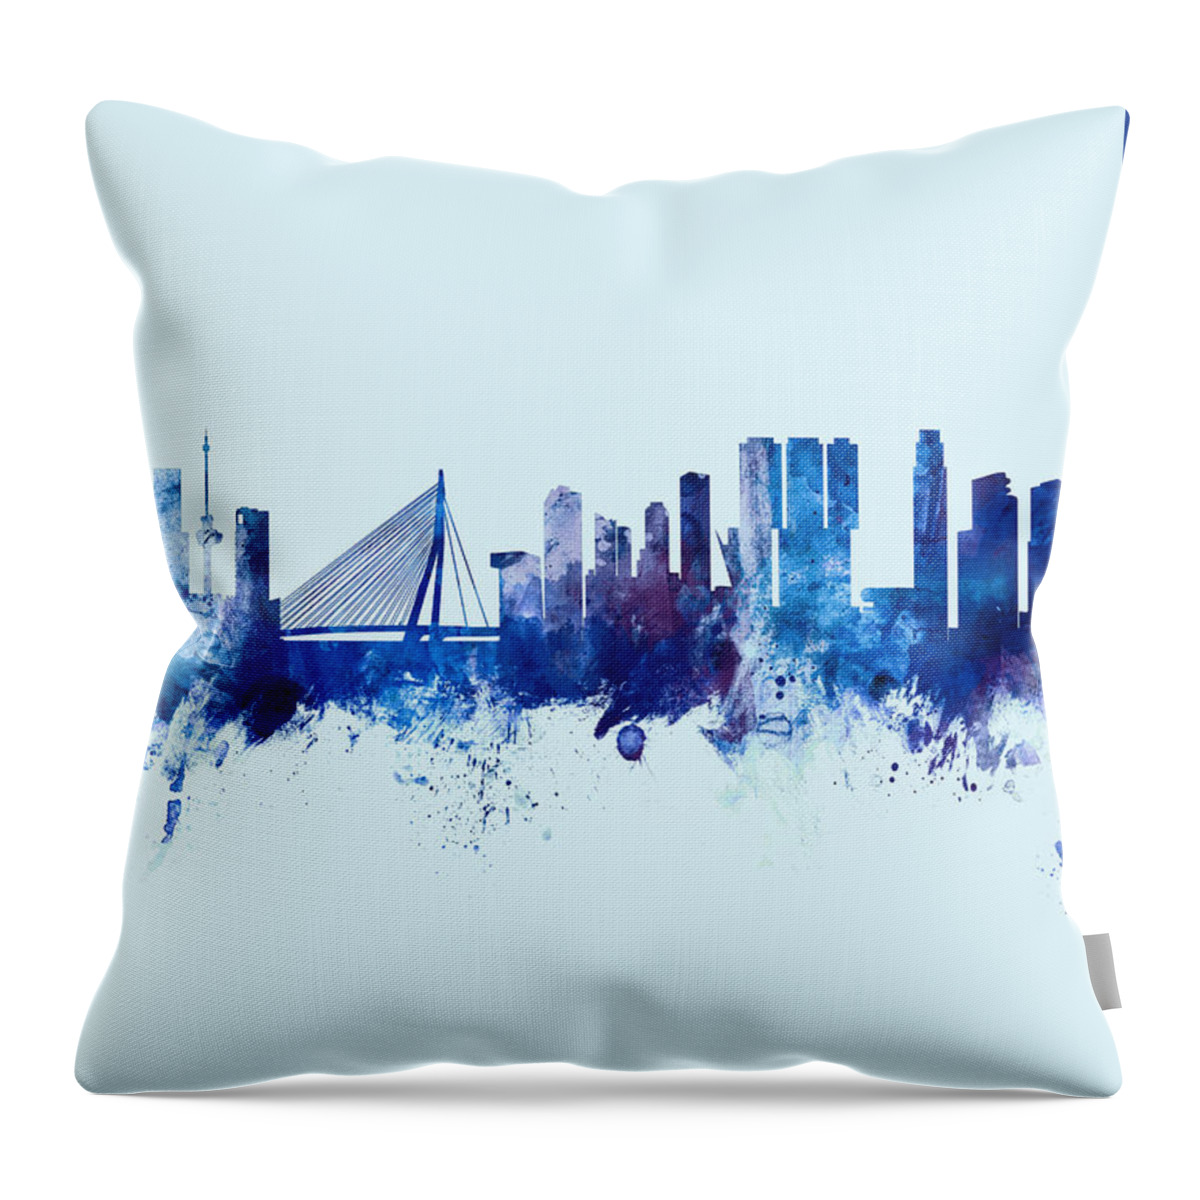 Rotterdam Throw Pillow featuring the digital art Rotterdam The Netherlands Skyline #21 by Michael Tompsett